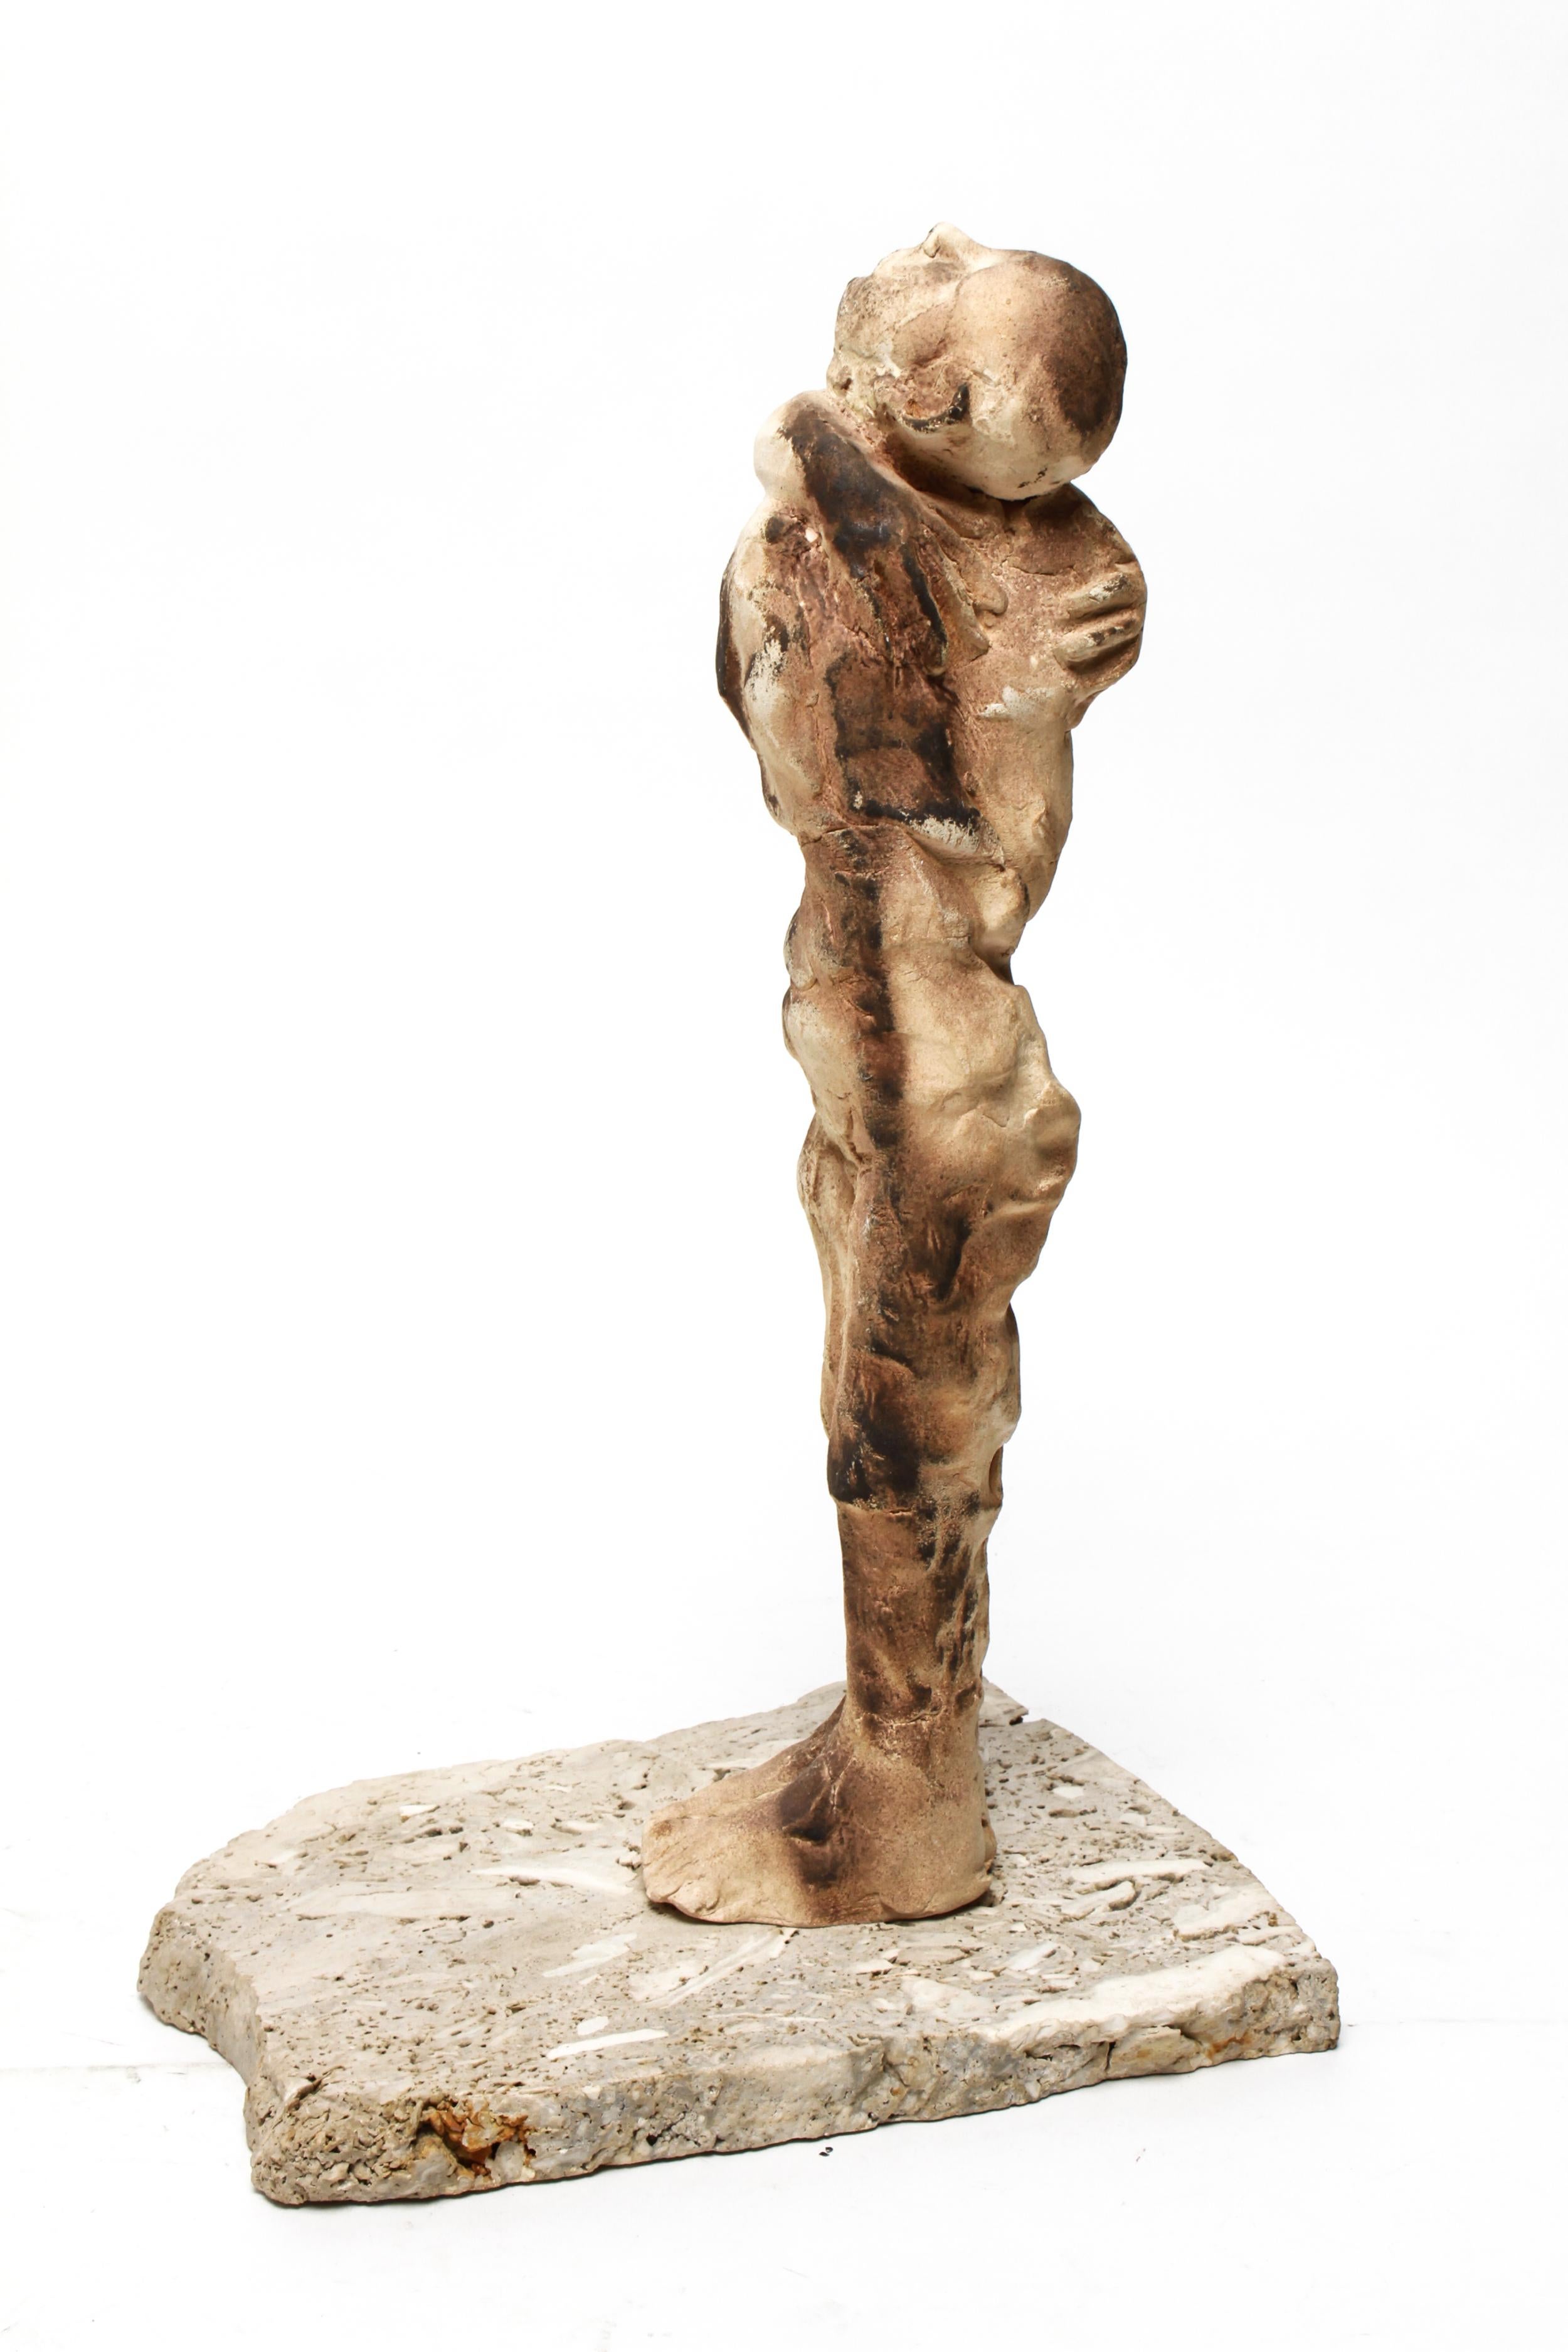 Josie Bockelman 'Come Away' Modern Clay Sculpture (amerikanisch)